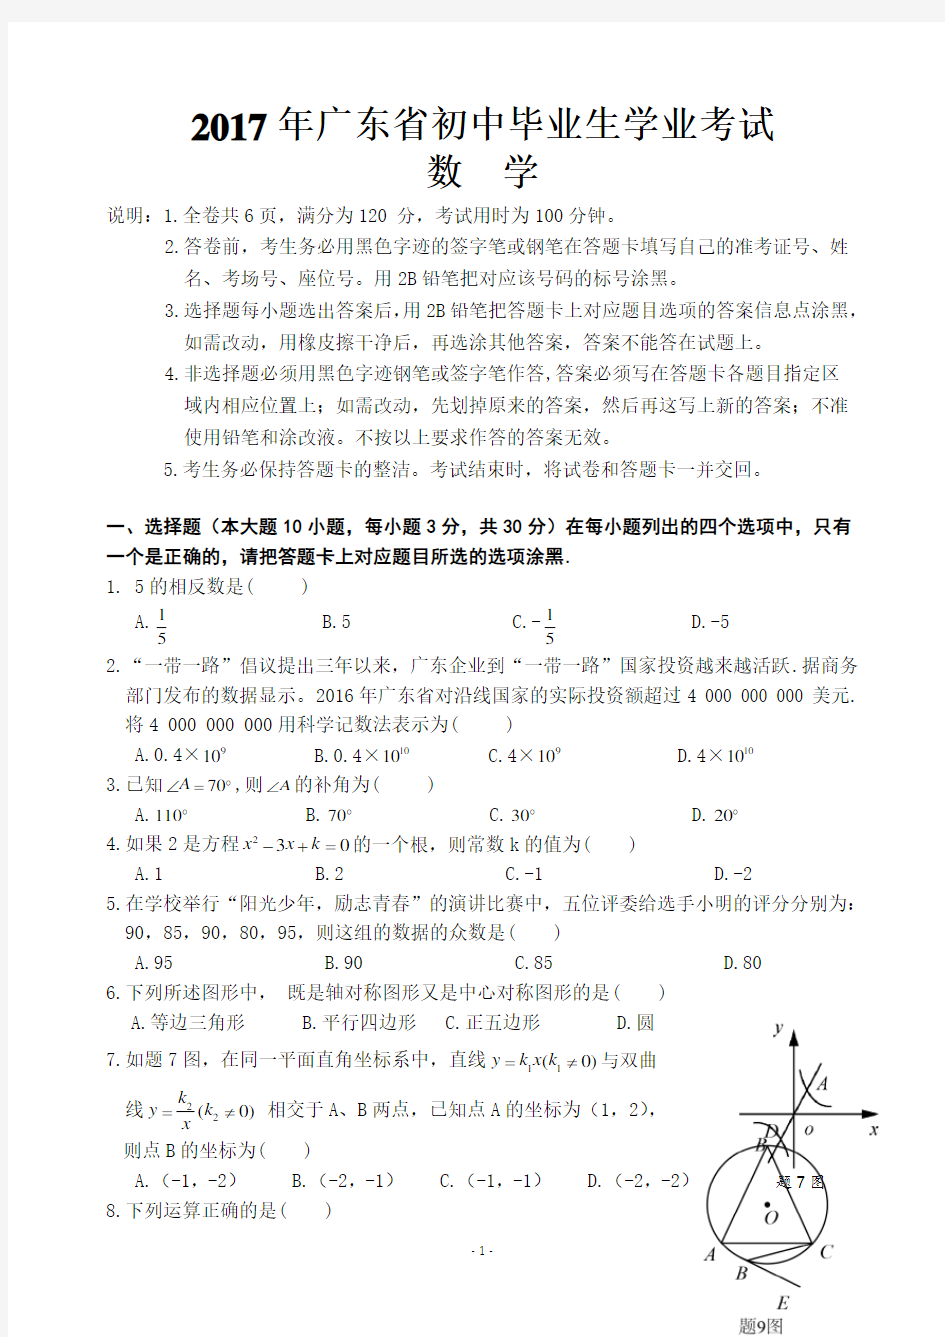 2017年广东省初中毕业生学业考试数学科试卷和答案